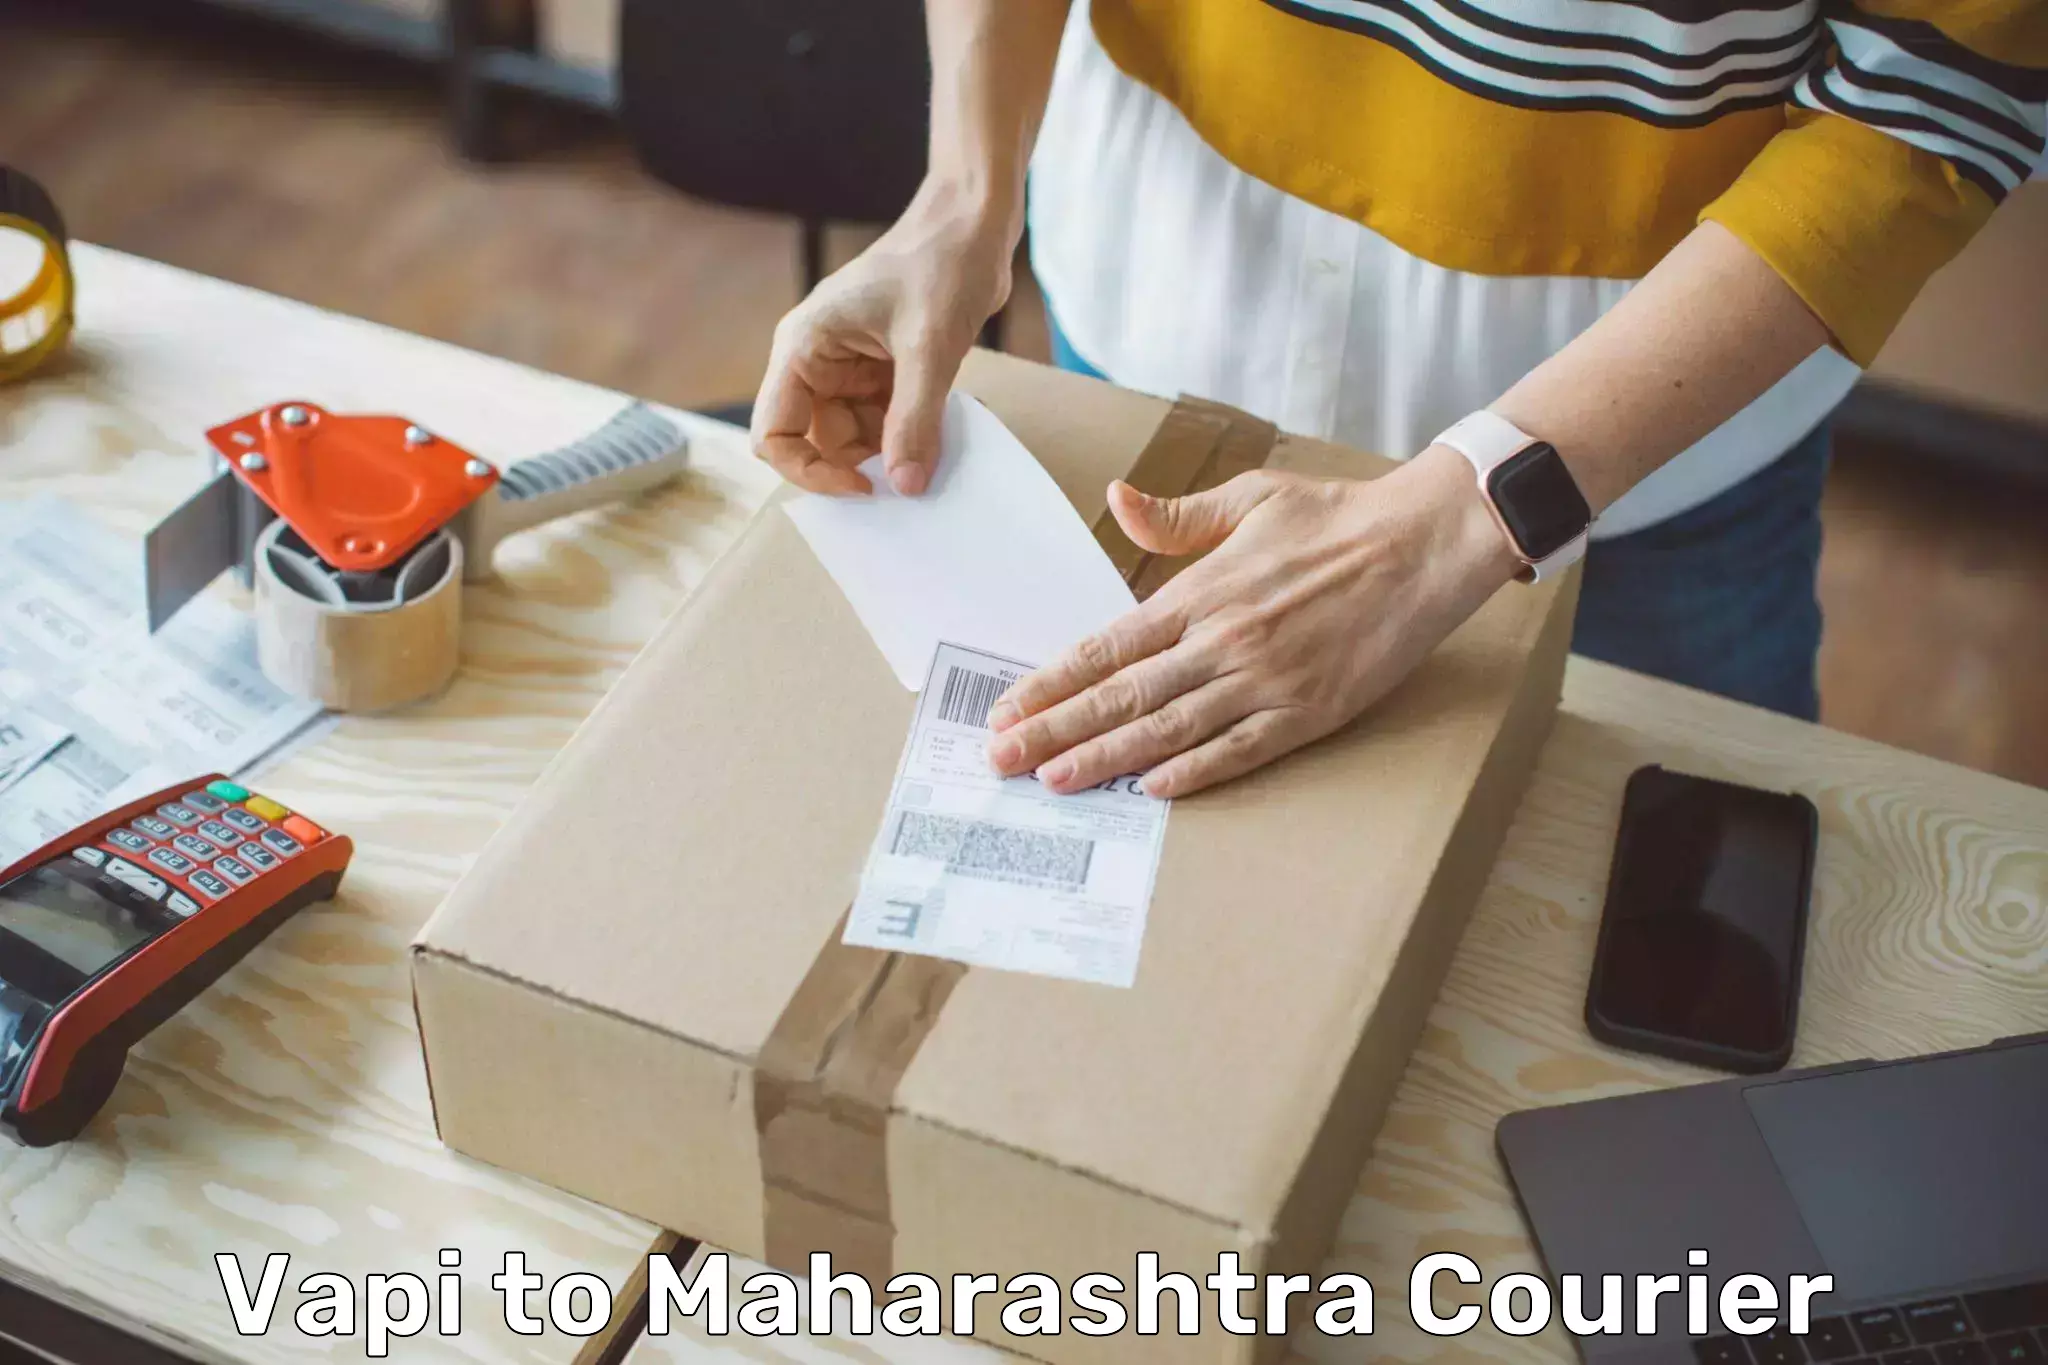 Customer-centric shipping Vapi to Maharashtra